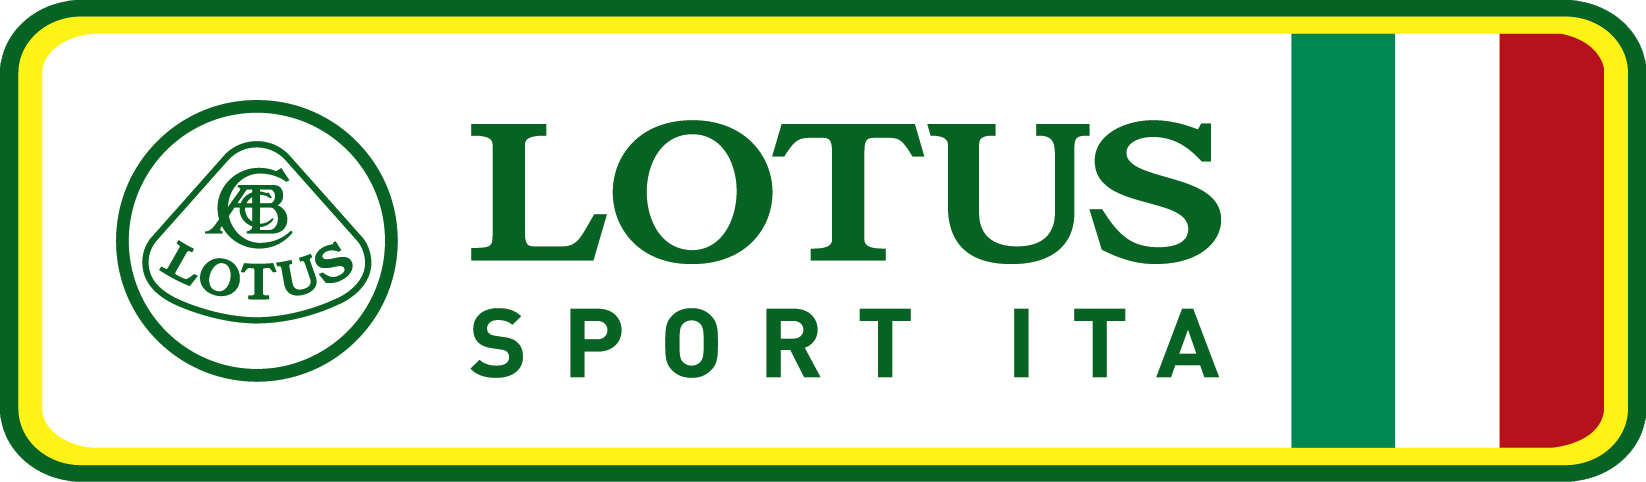 Lotus Car Logo - ABOUT LOTUS SPORT ITALY | Lotus Cars